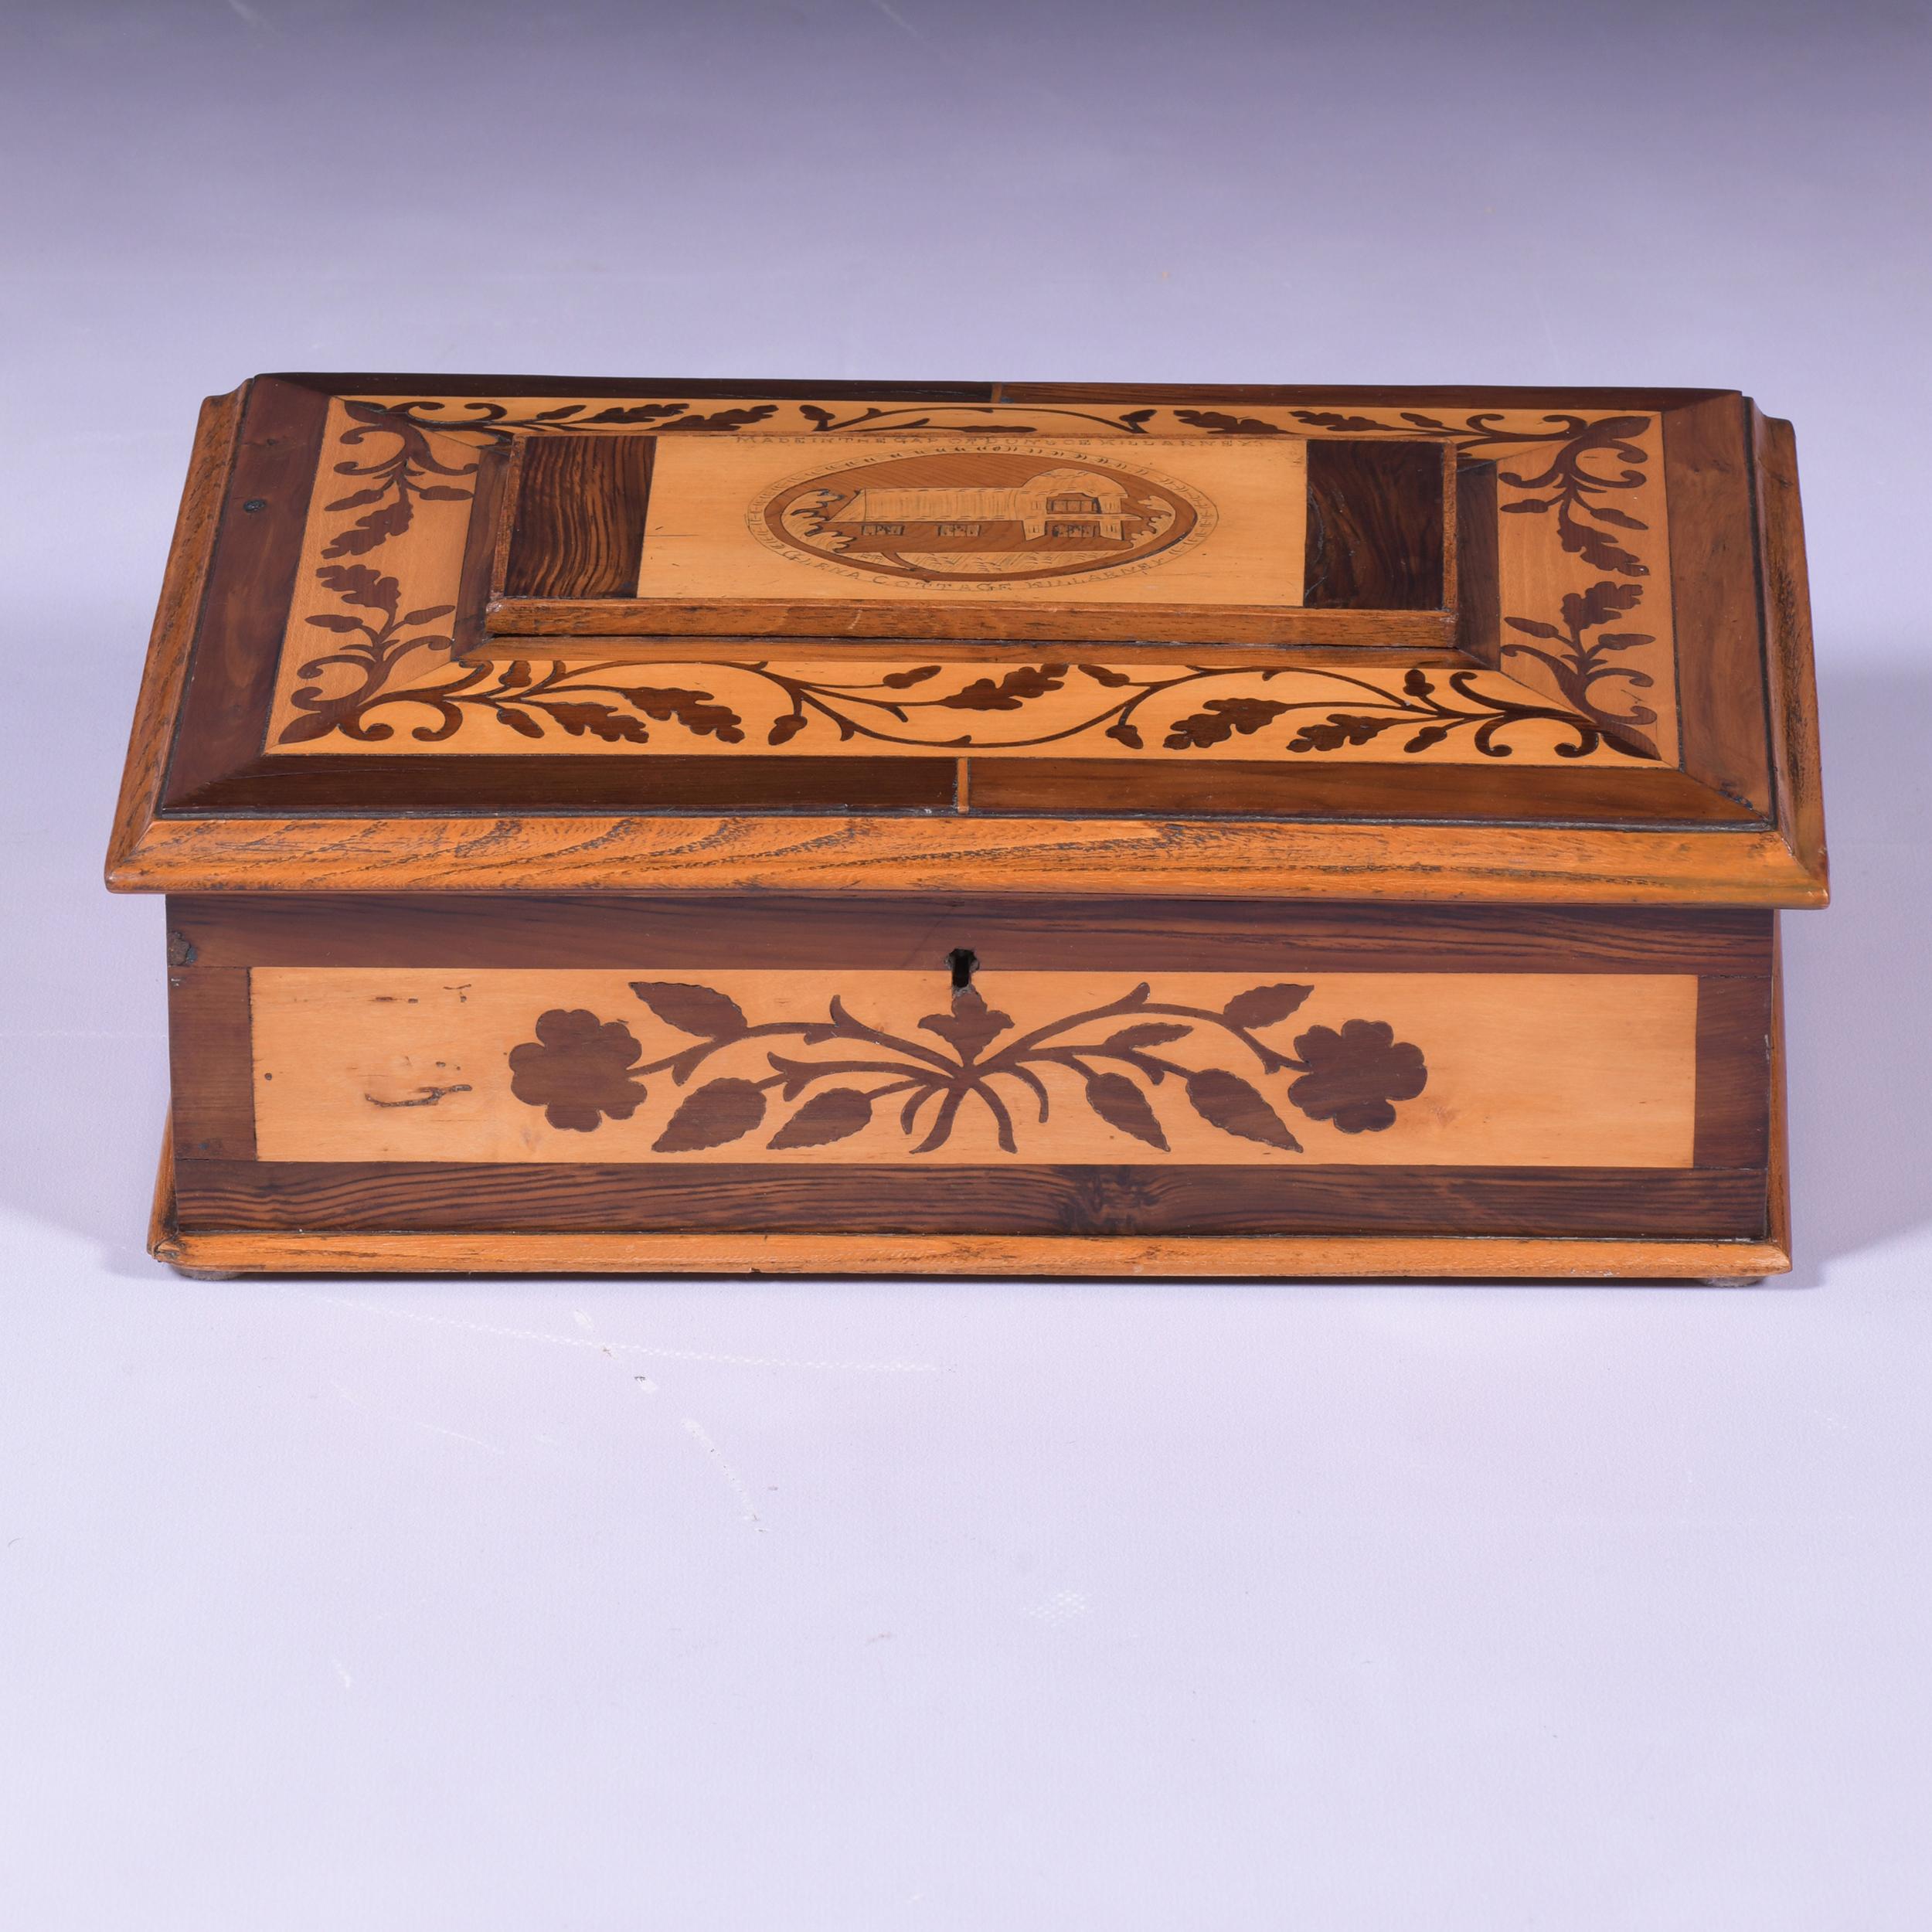 Superbe boîte à ouvrage en bois d'arbousier de la marque Killarney, datant du début du XIXe siècle, dont le couvercle à charnière est typiquement incrusté d'une scène de Glena Cottage (Killarney) et de trèfles sinueux, portant l'inscription 